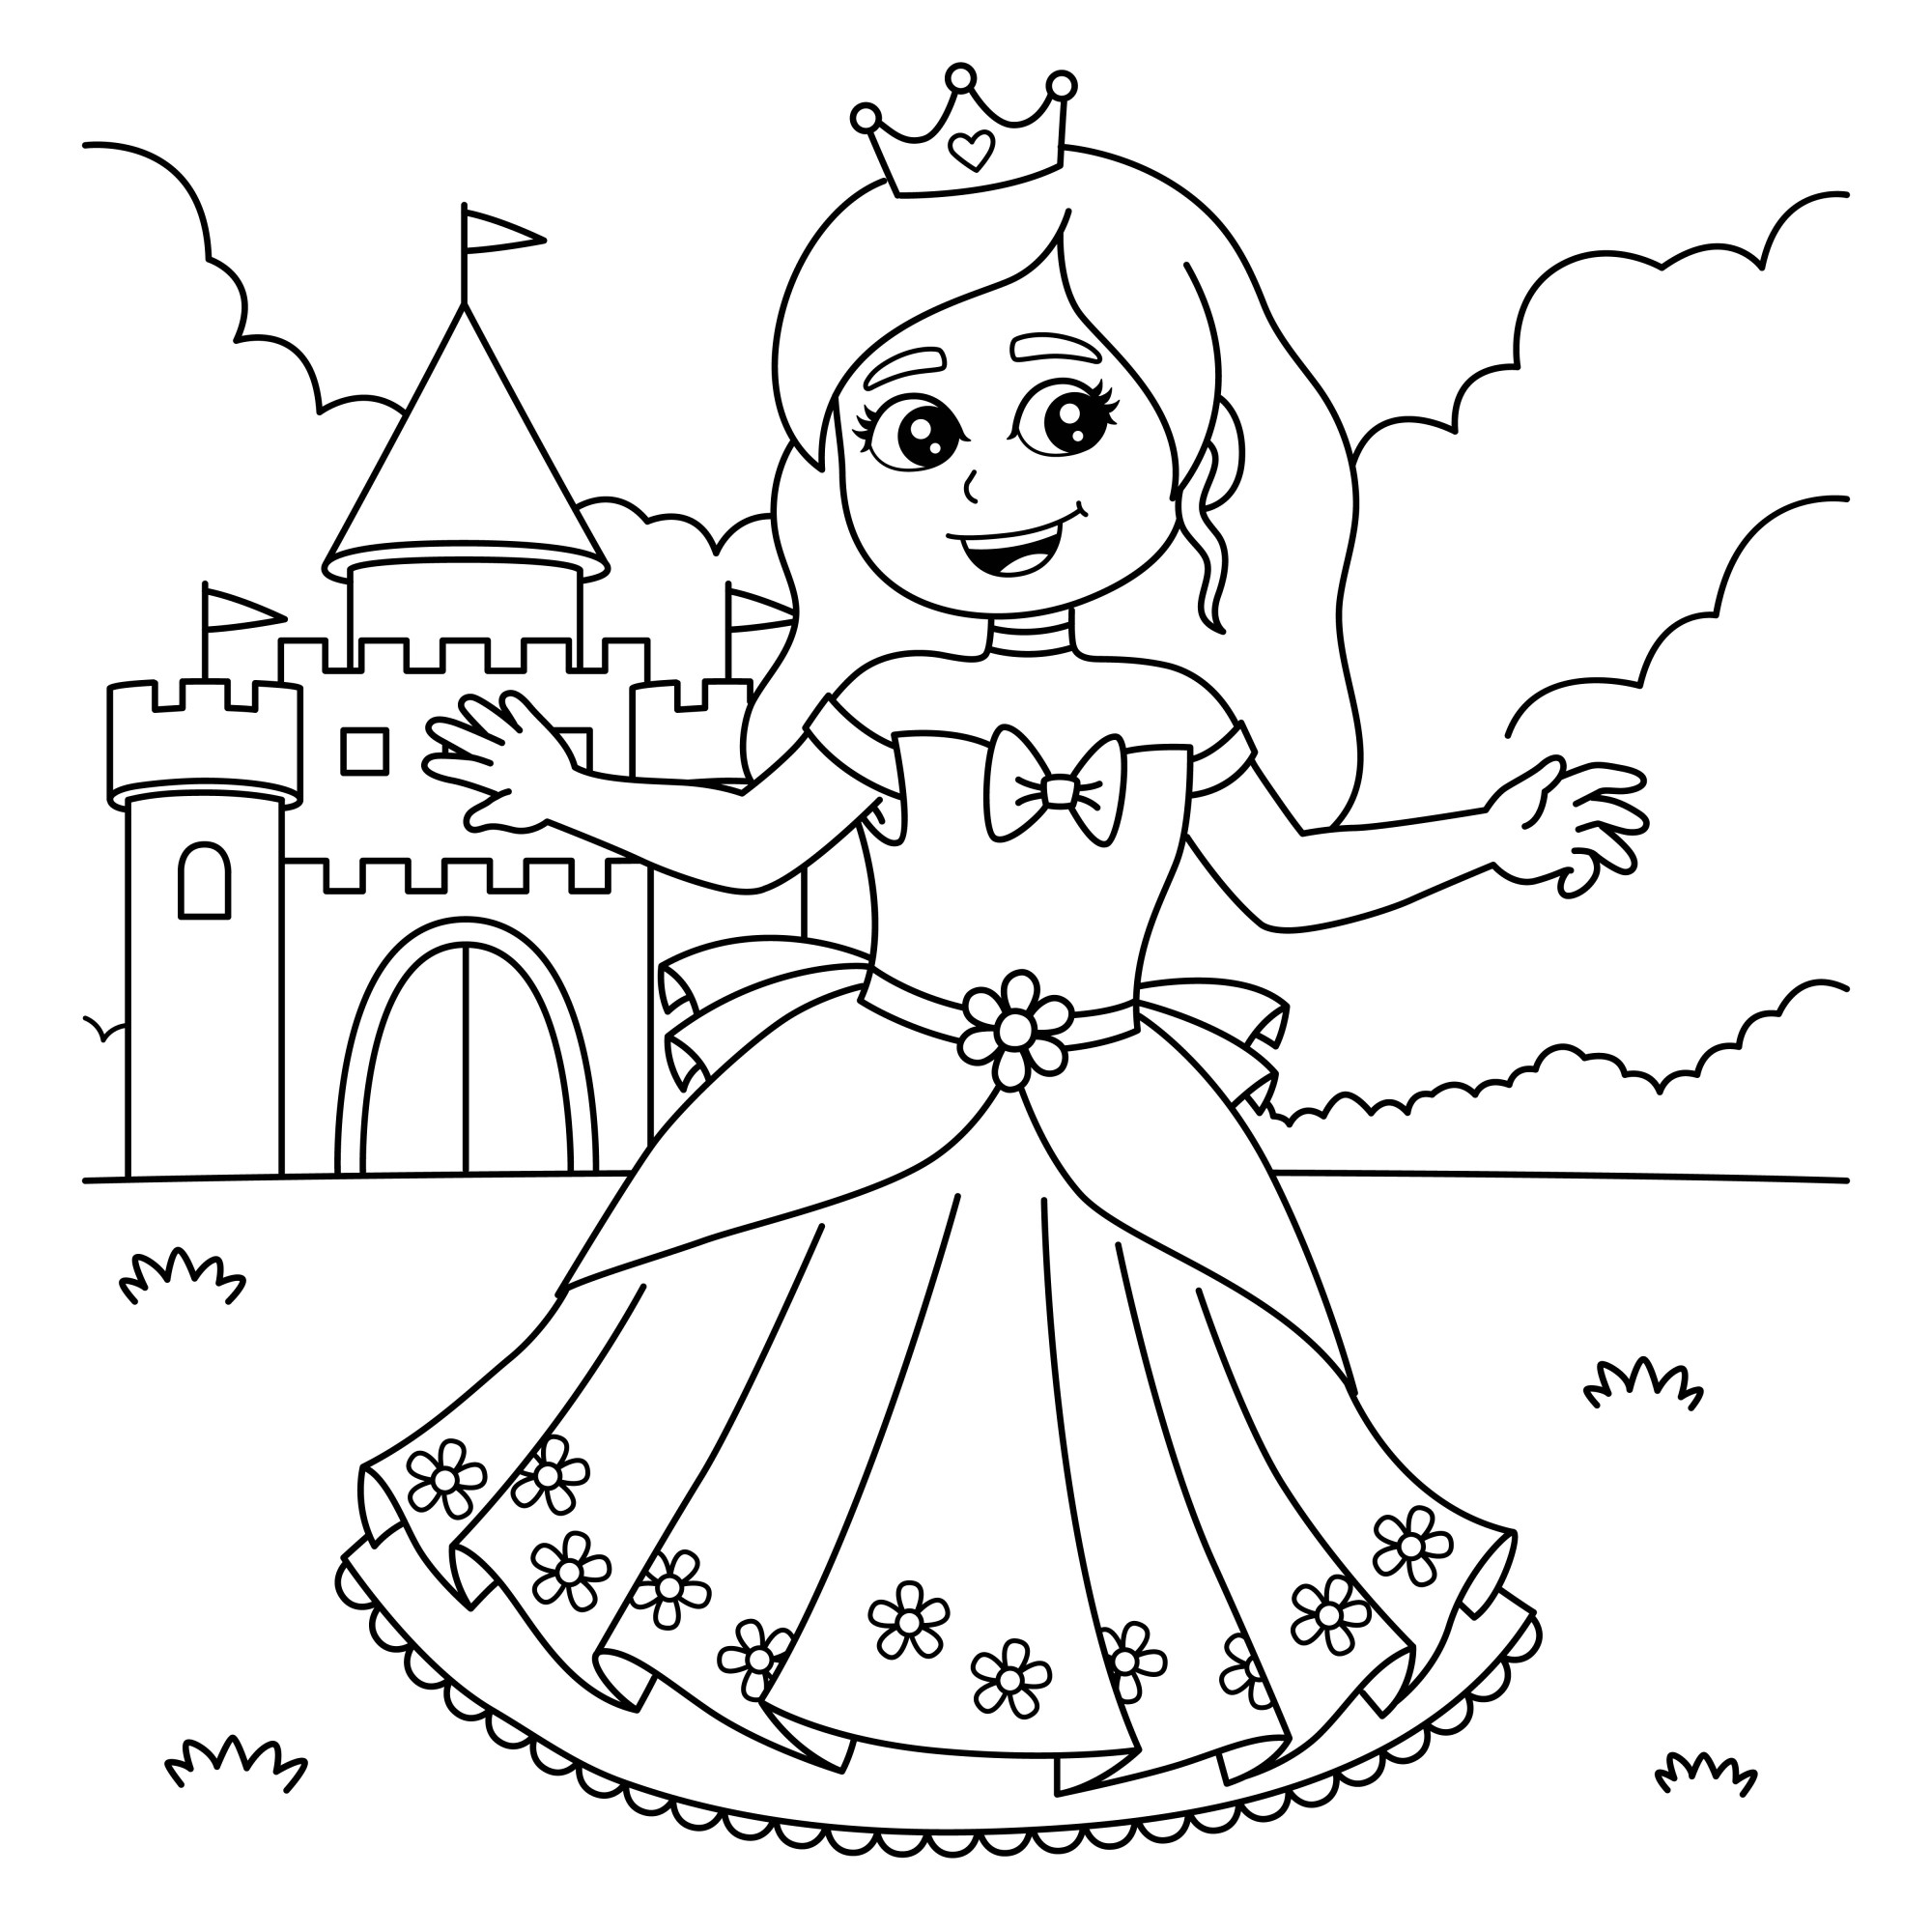 Раскраска для детей: принцесса танцует перед замком